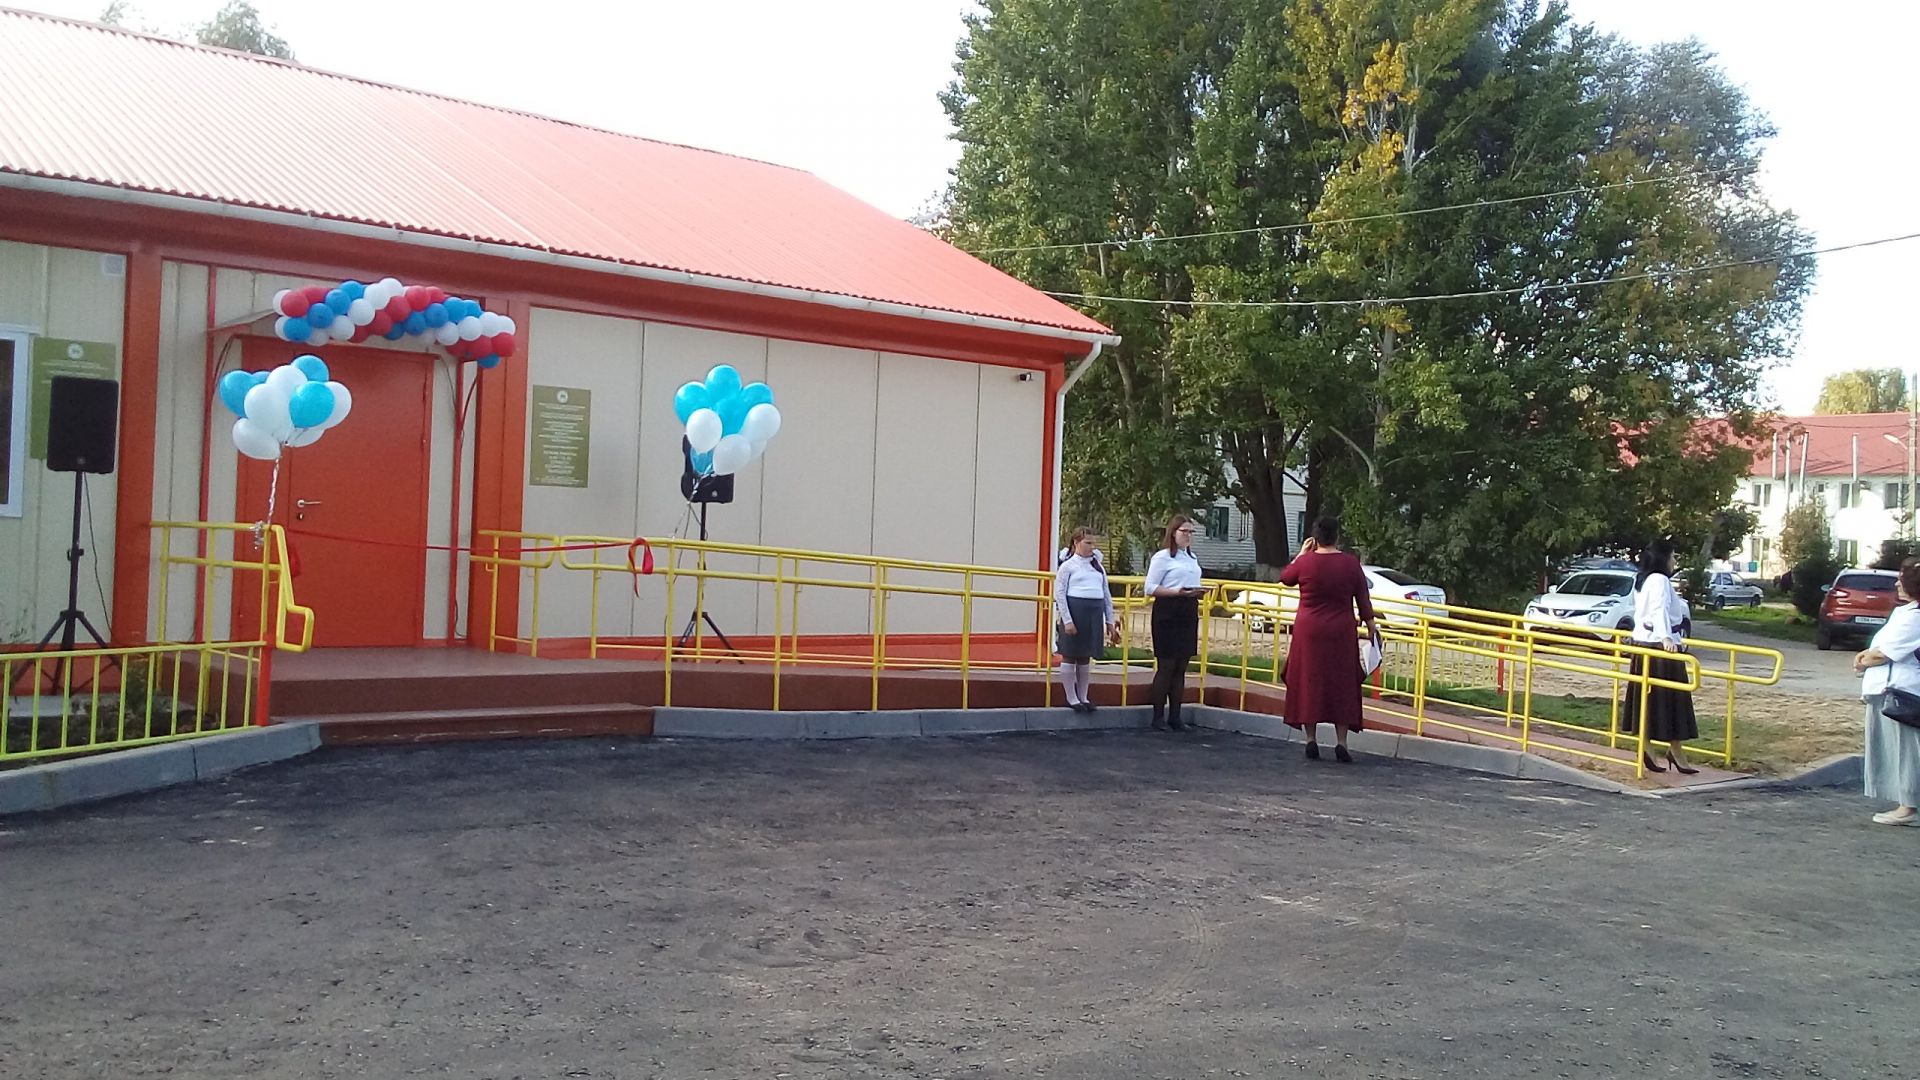 Новый ФАП, детский сад "Колосок" и Дворец культуры: В Айше открылись новые объекты